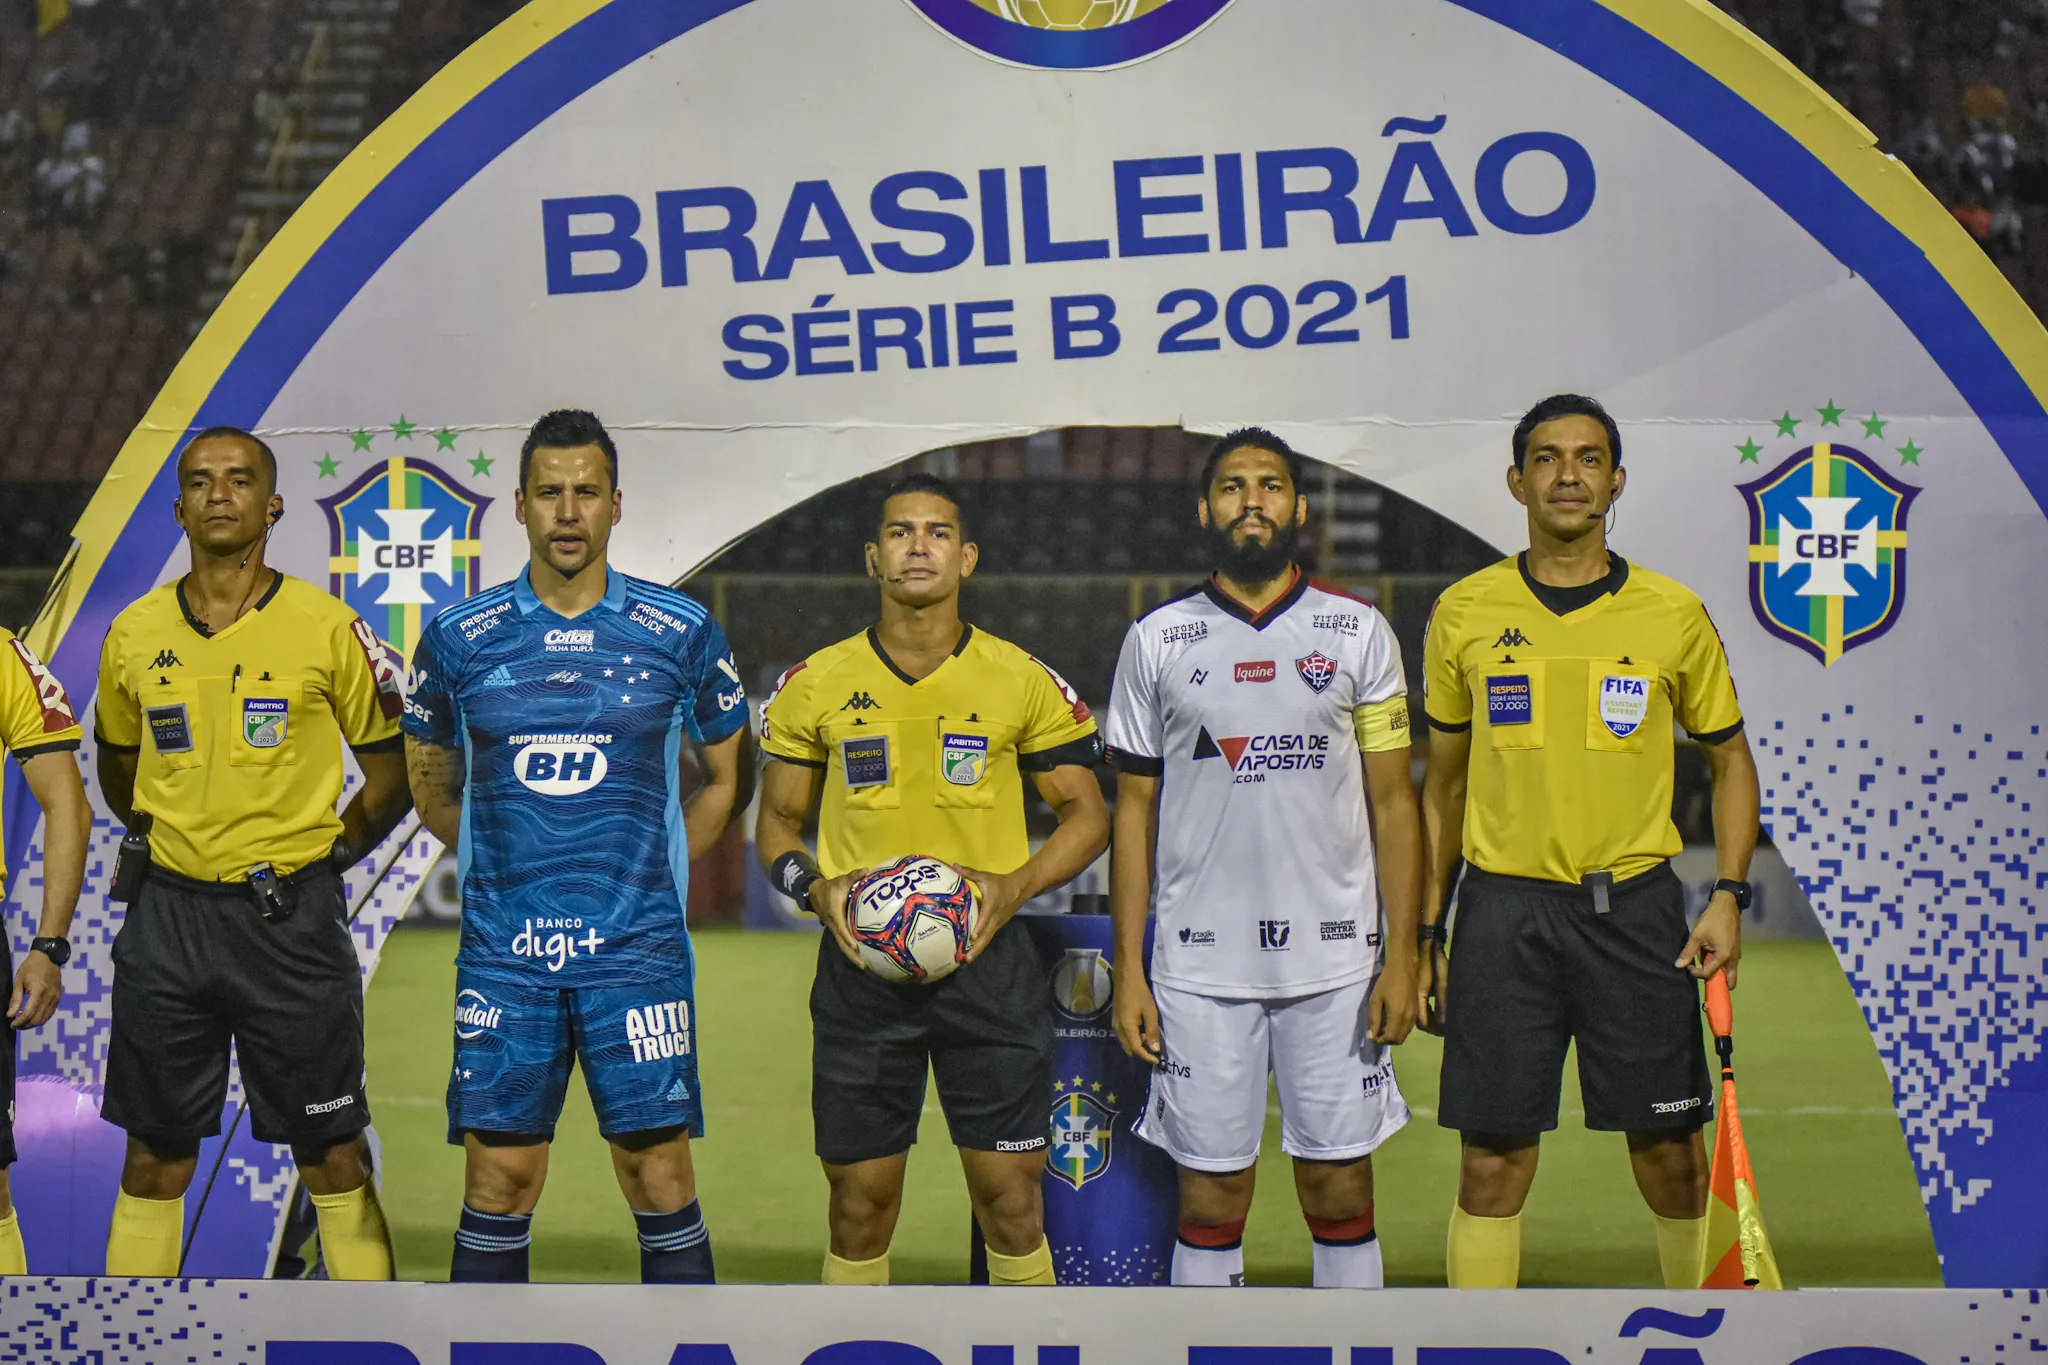 Última vez que o Vitória encarou o Cruzeiro foi em 2021